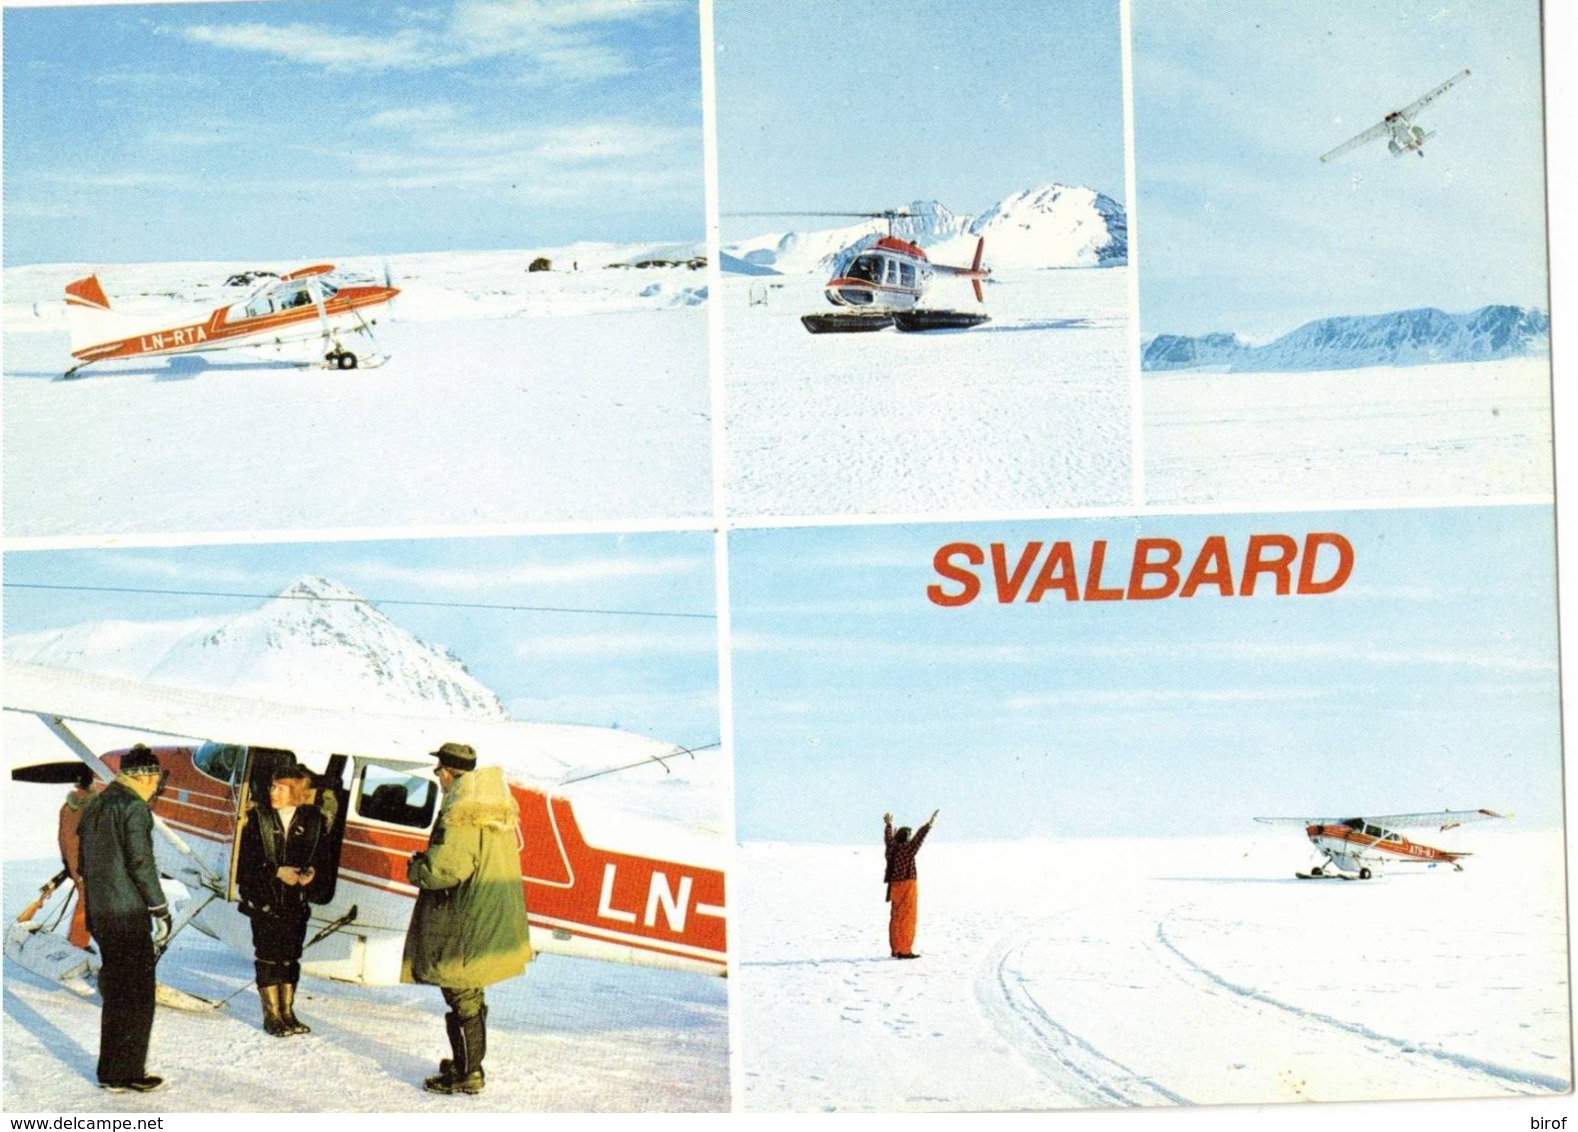 SVALBARD FLYTRAFIKK (NORWAY) - Norway